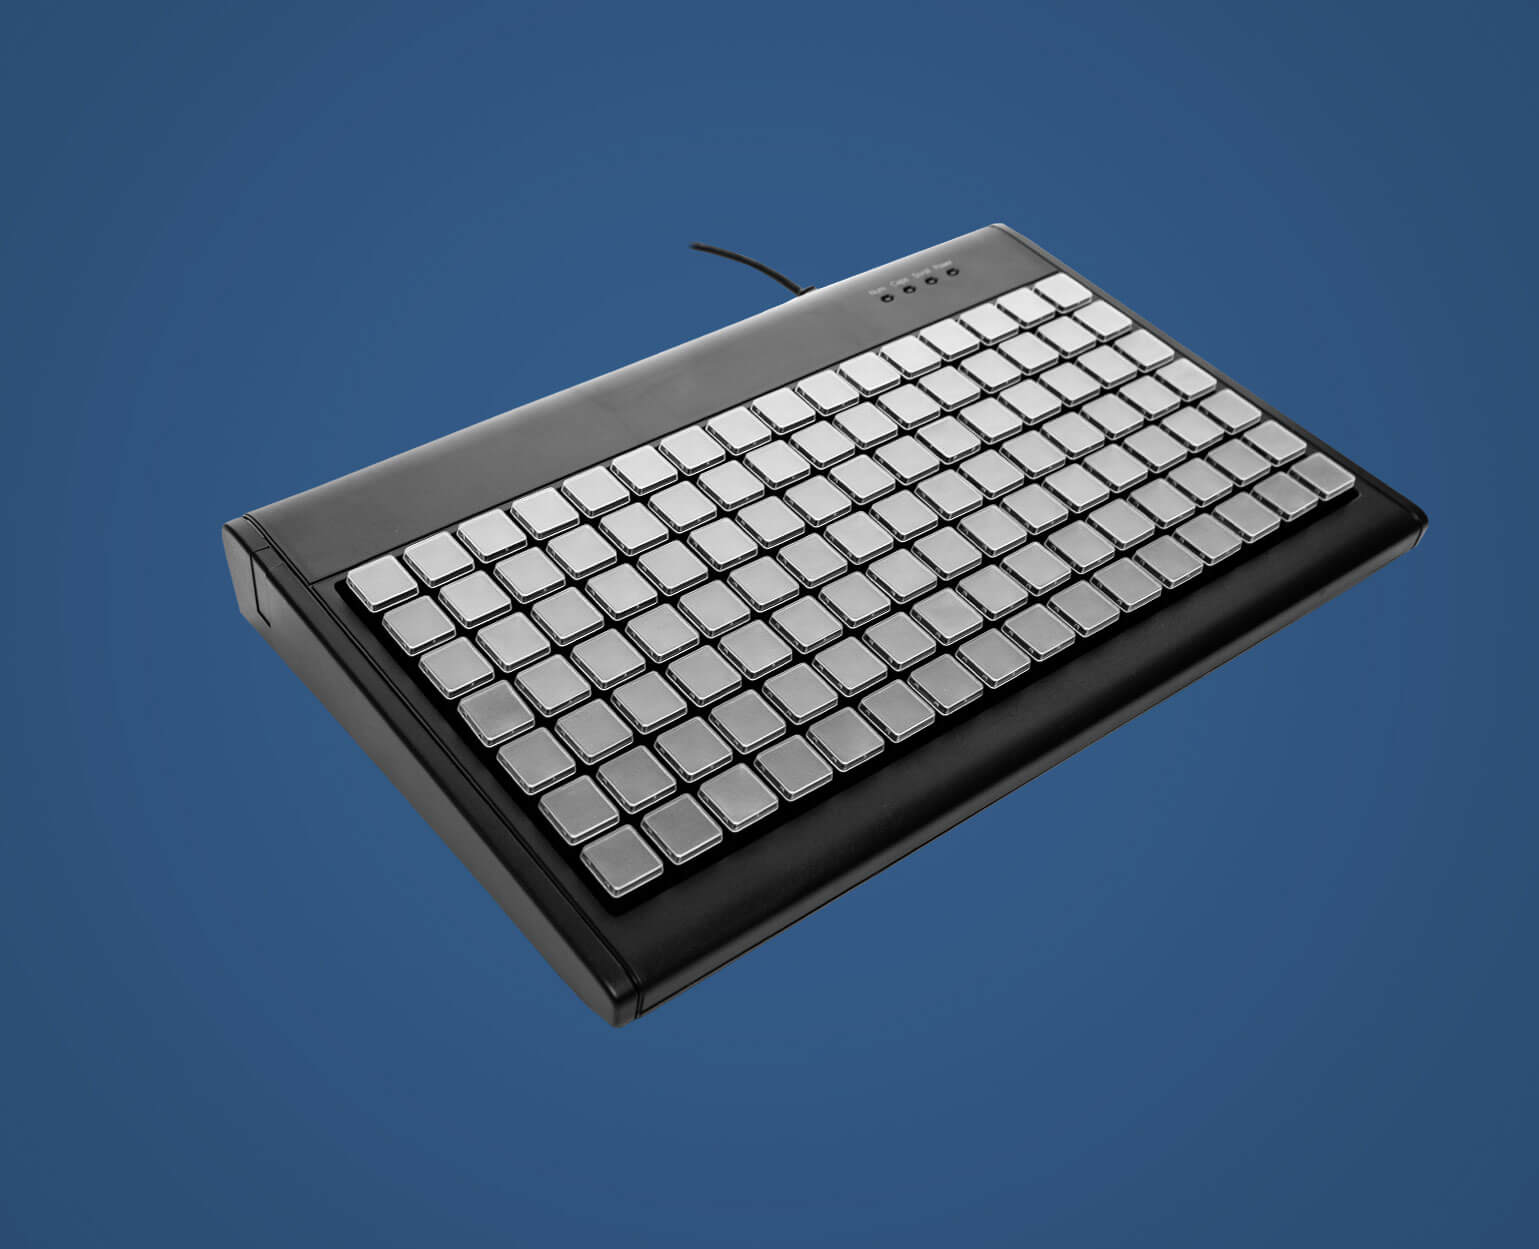 Matrix tastatur - Alle Produkte unter allen analysierten Matrix tastatur